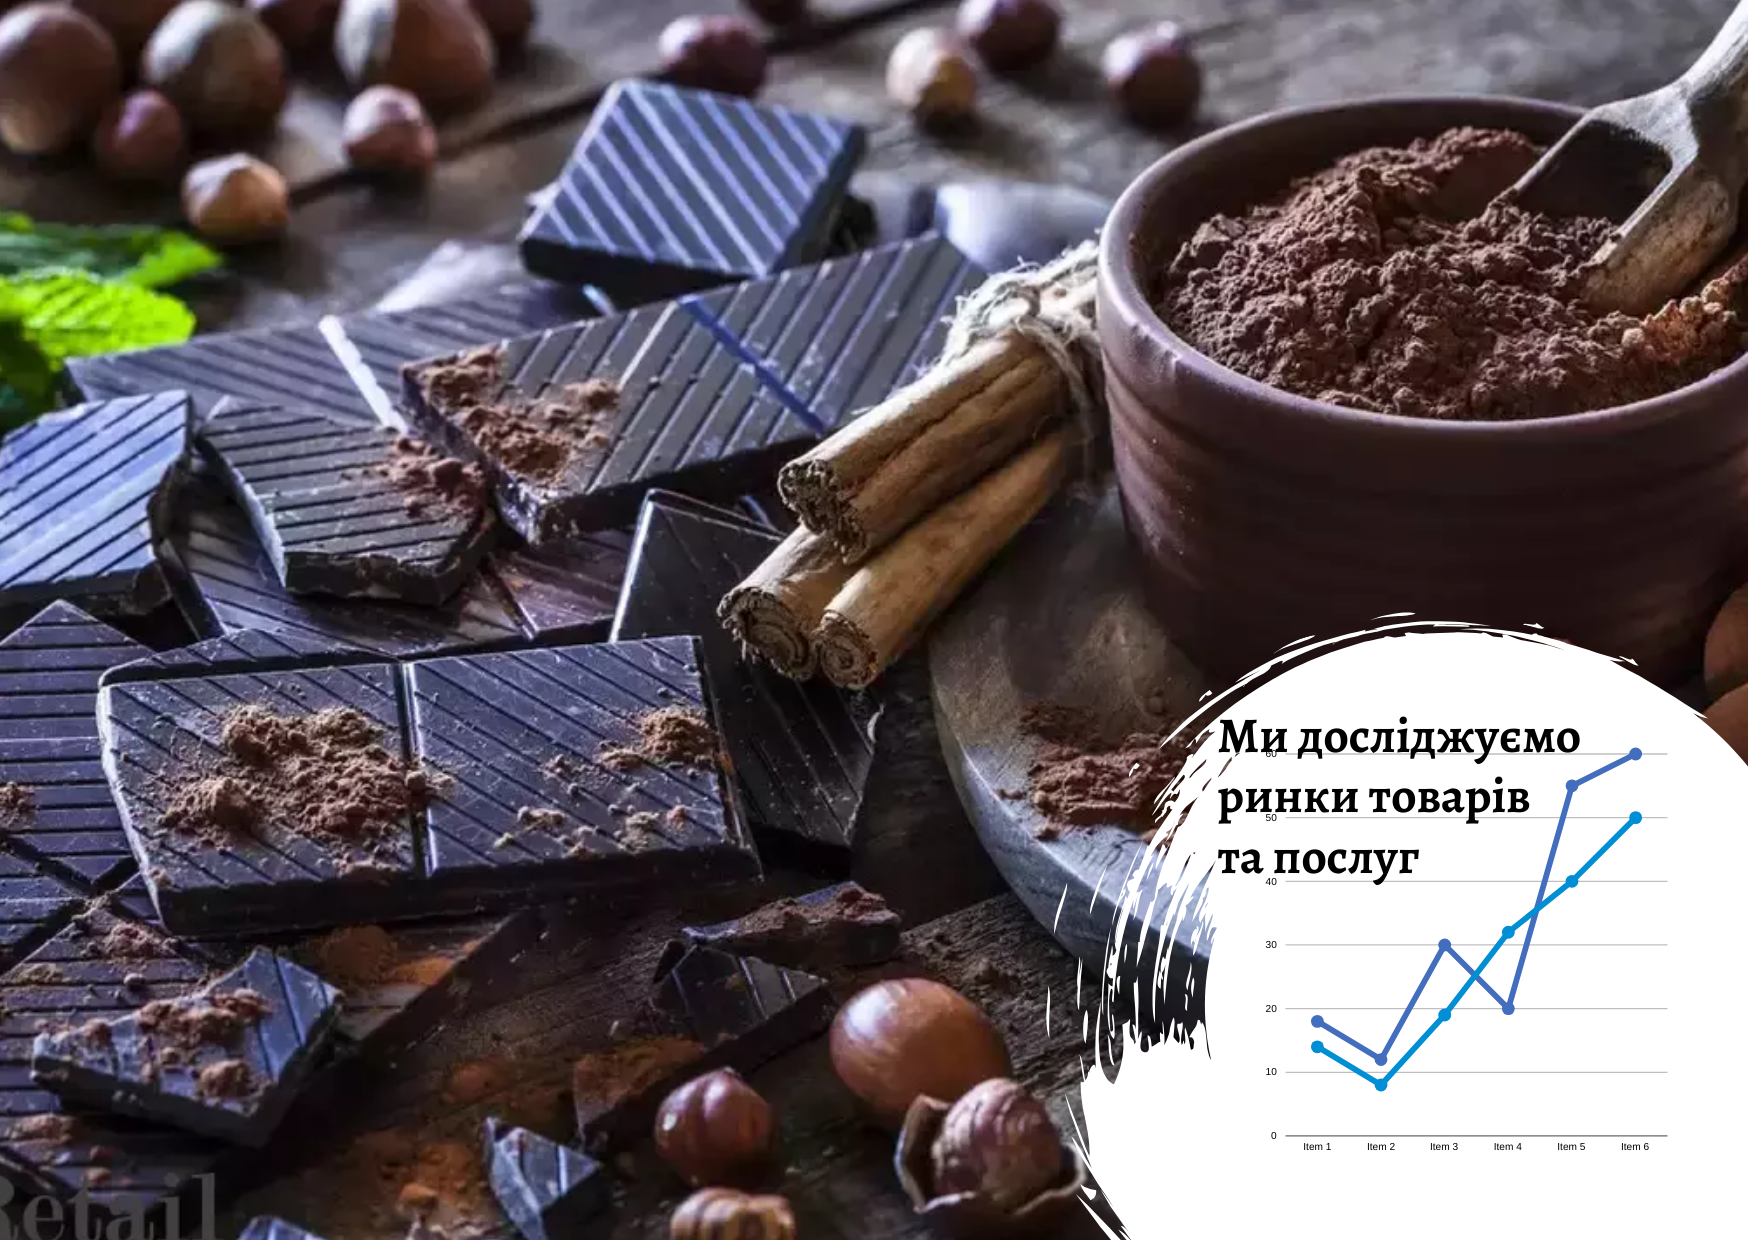 Ukrainian premium segment chocolate market: current trends